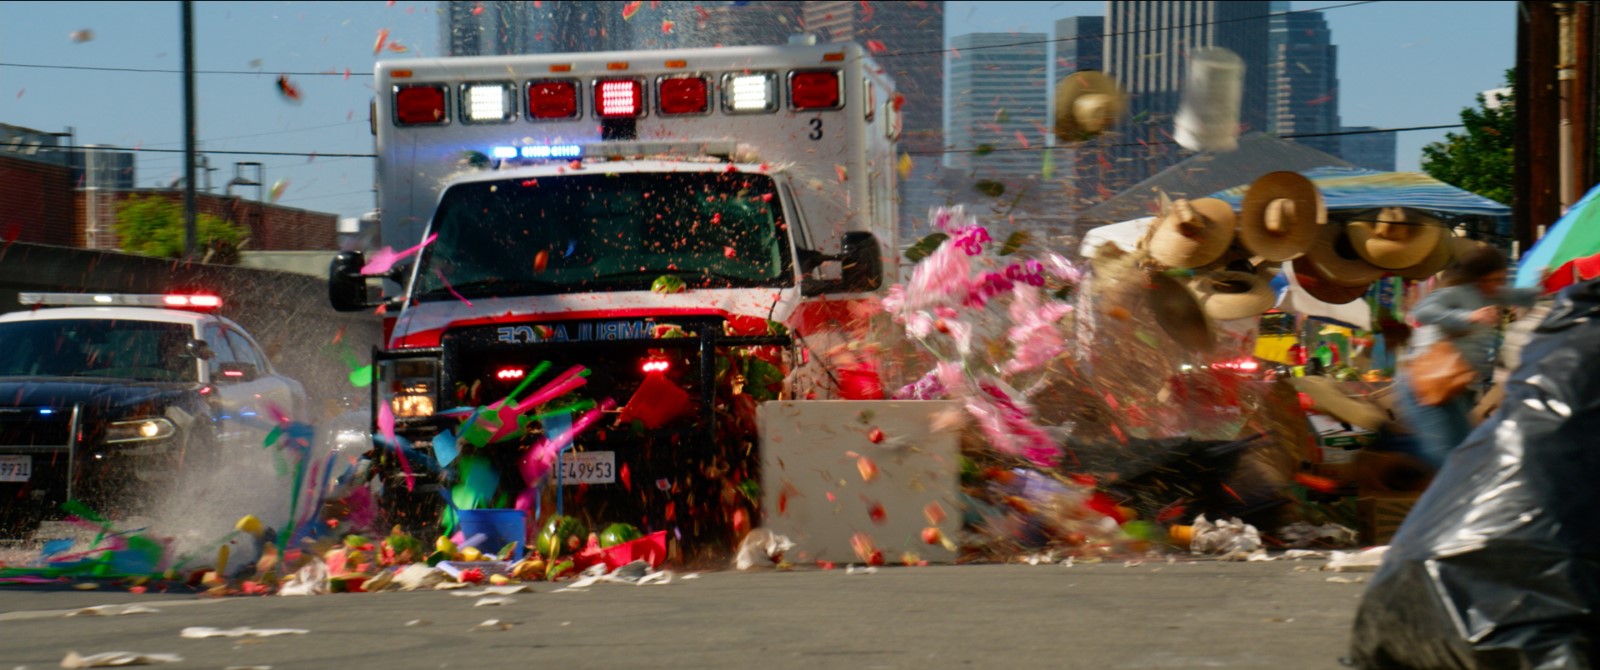 Ambulance : Michael Bay trouve les effets numériques de son film "merdiques"